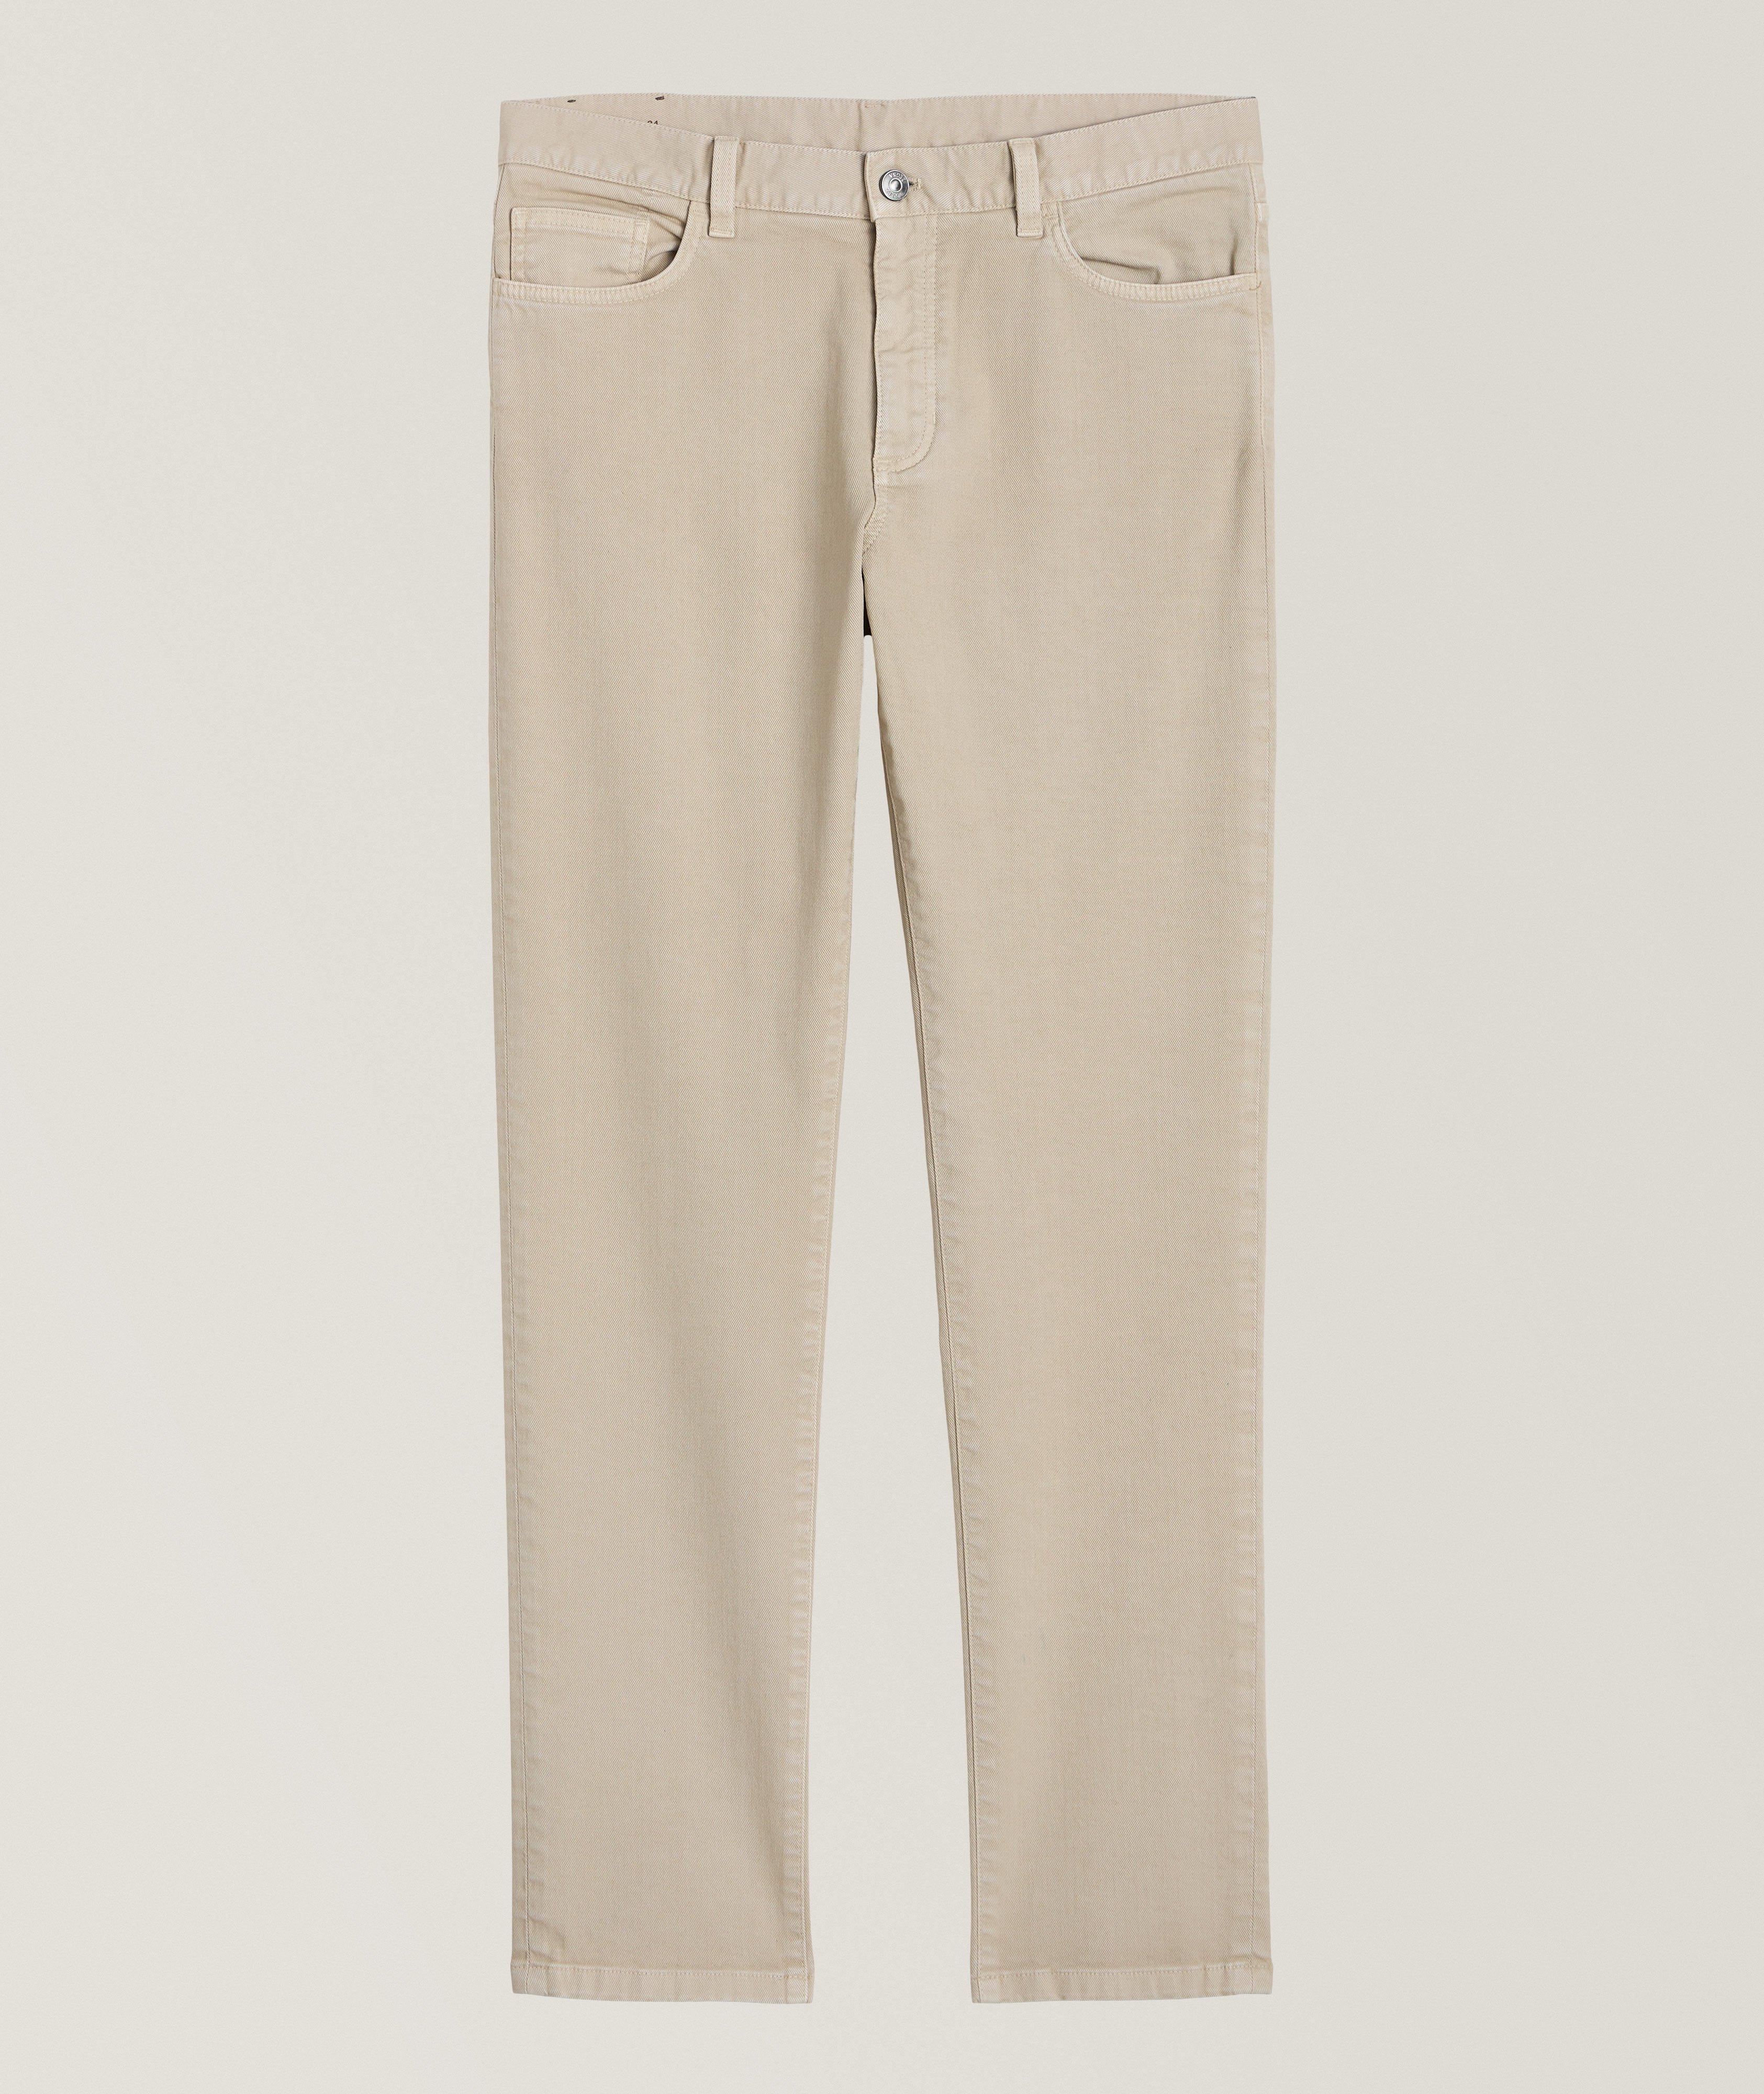 CityX Slim-Fit Stretch-Cotton Pants image 0